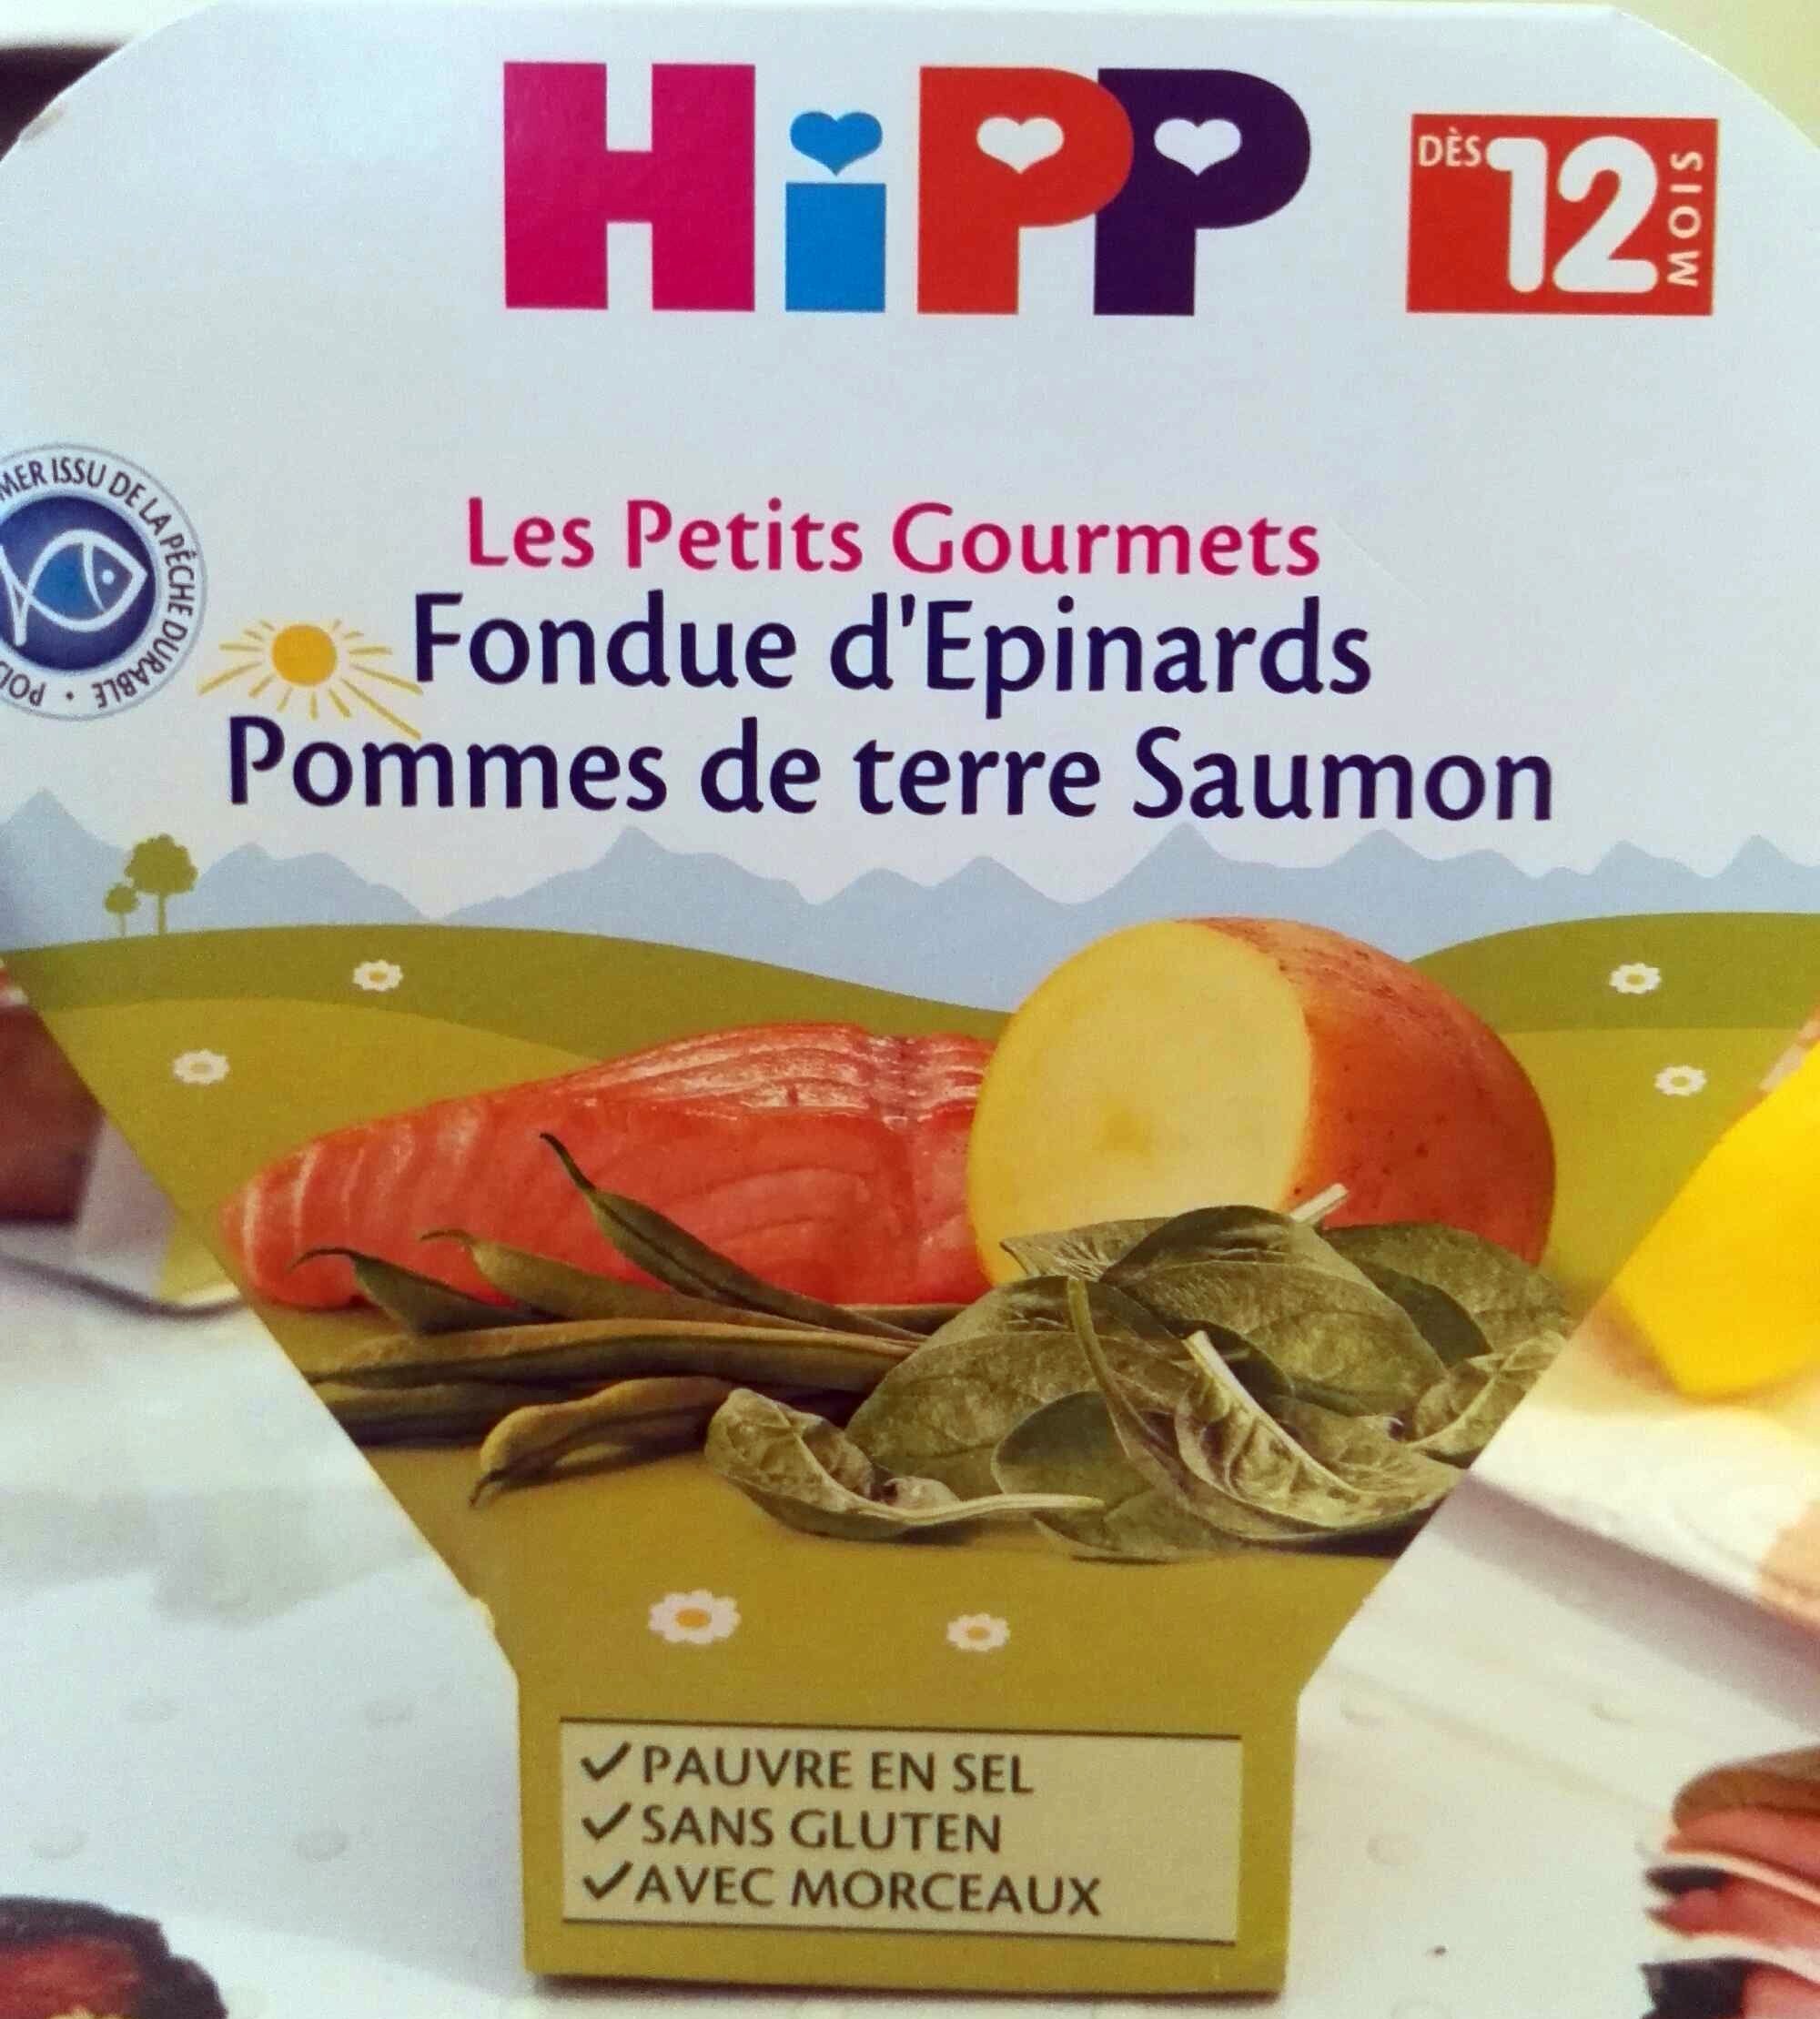 Fondue d'épinards Pommes de terre Saumon - Product - fr